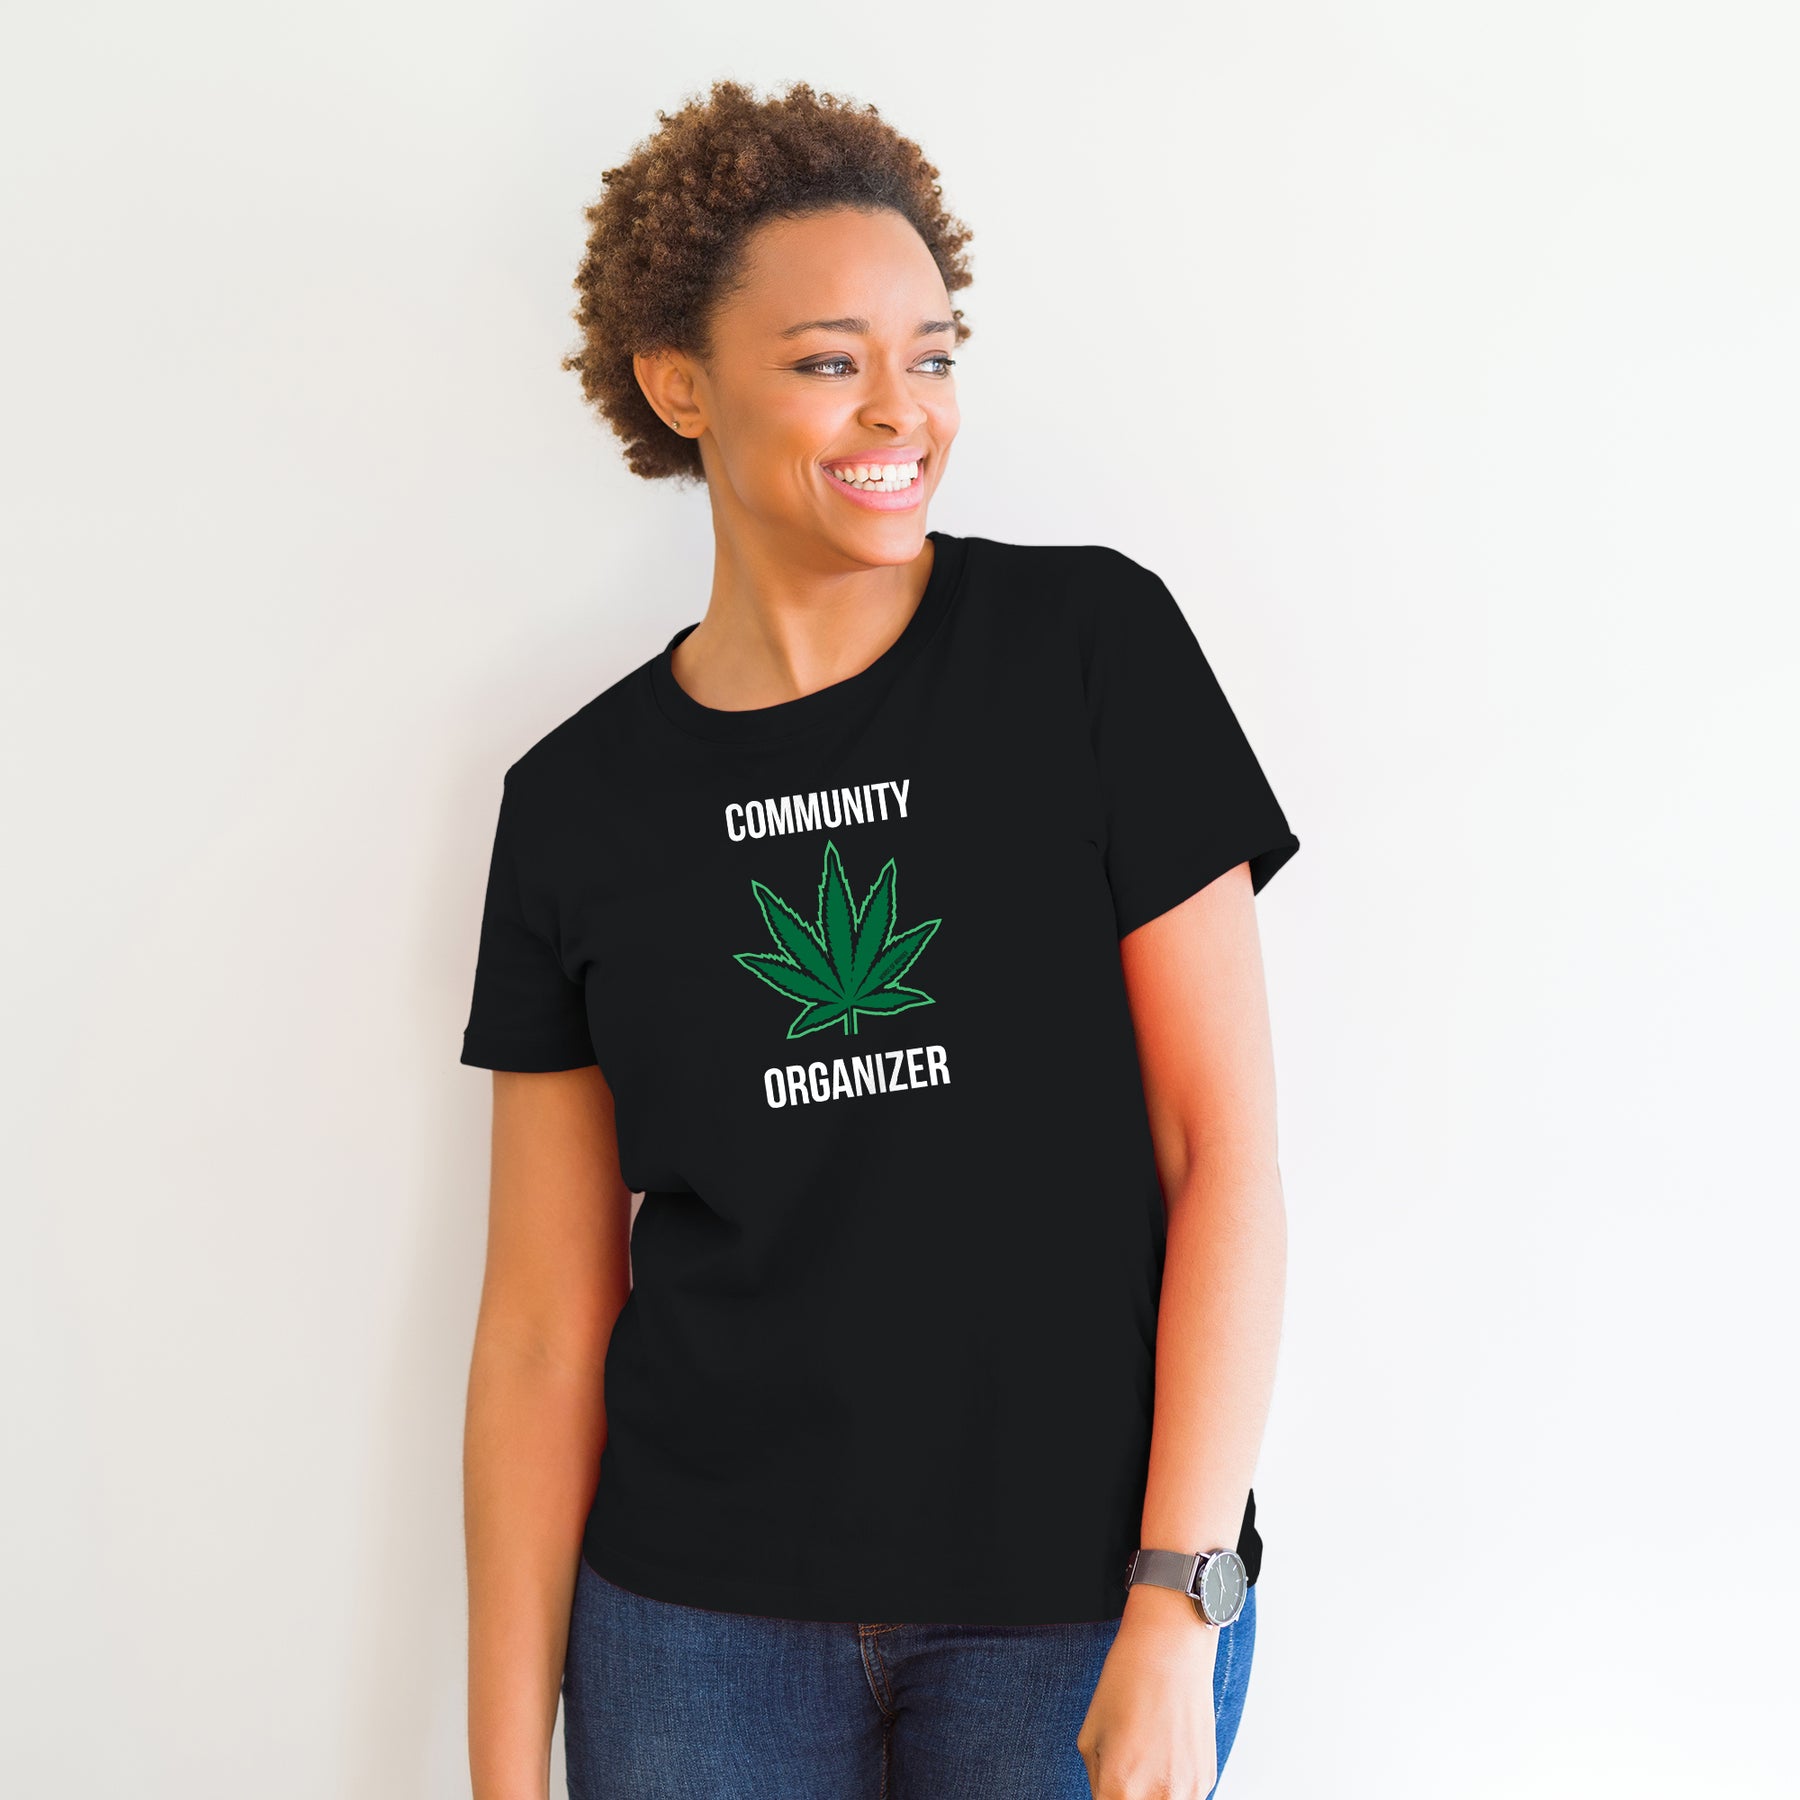 Words of Wonder Community Organizer T-shirt- Black – Underground Printing  Online Stores